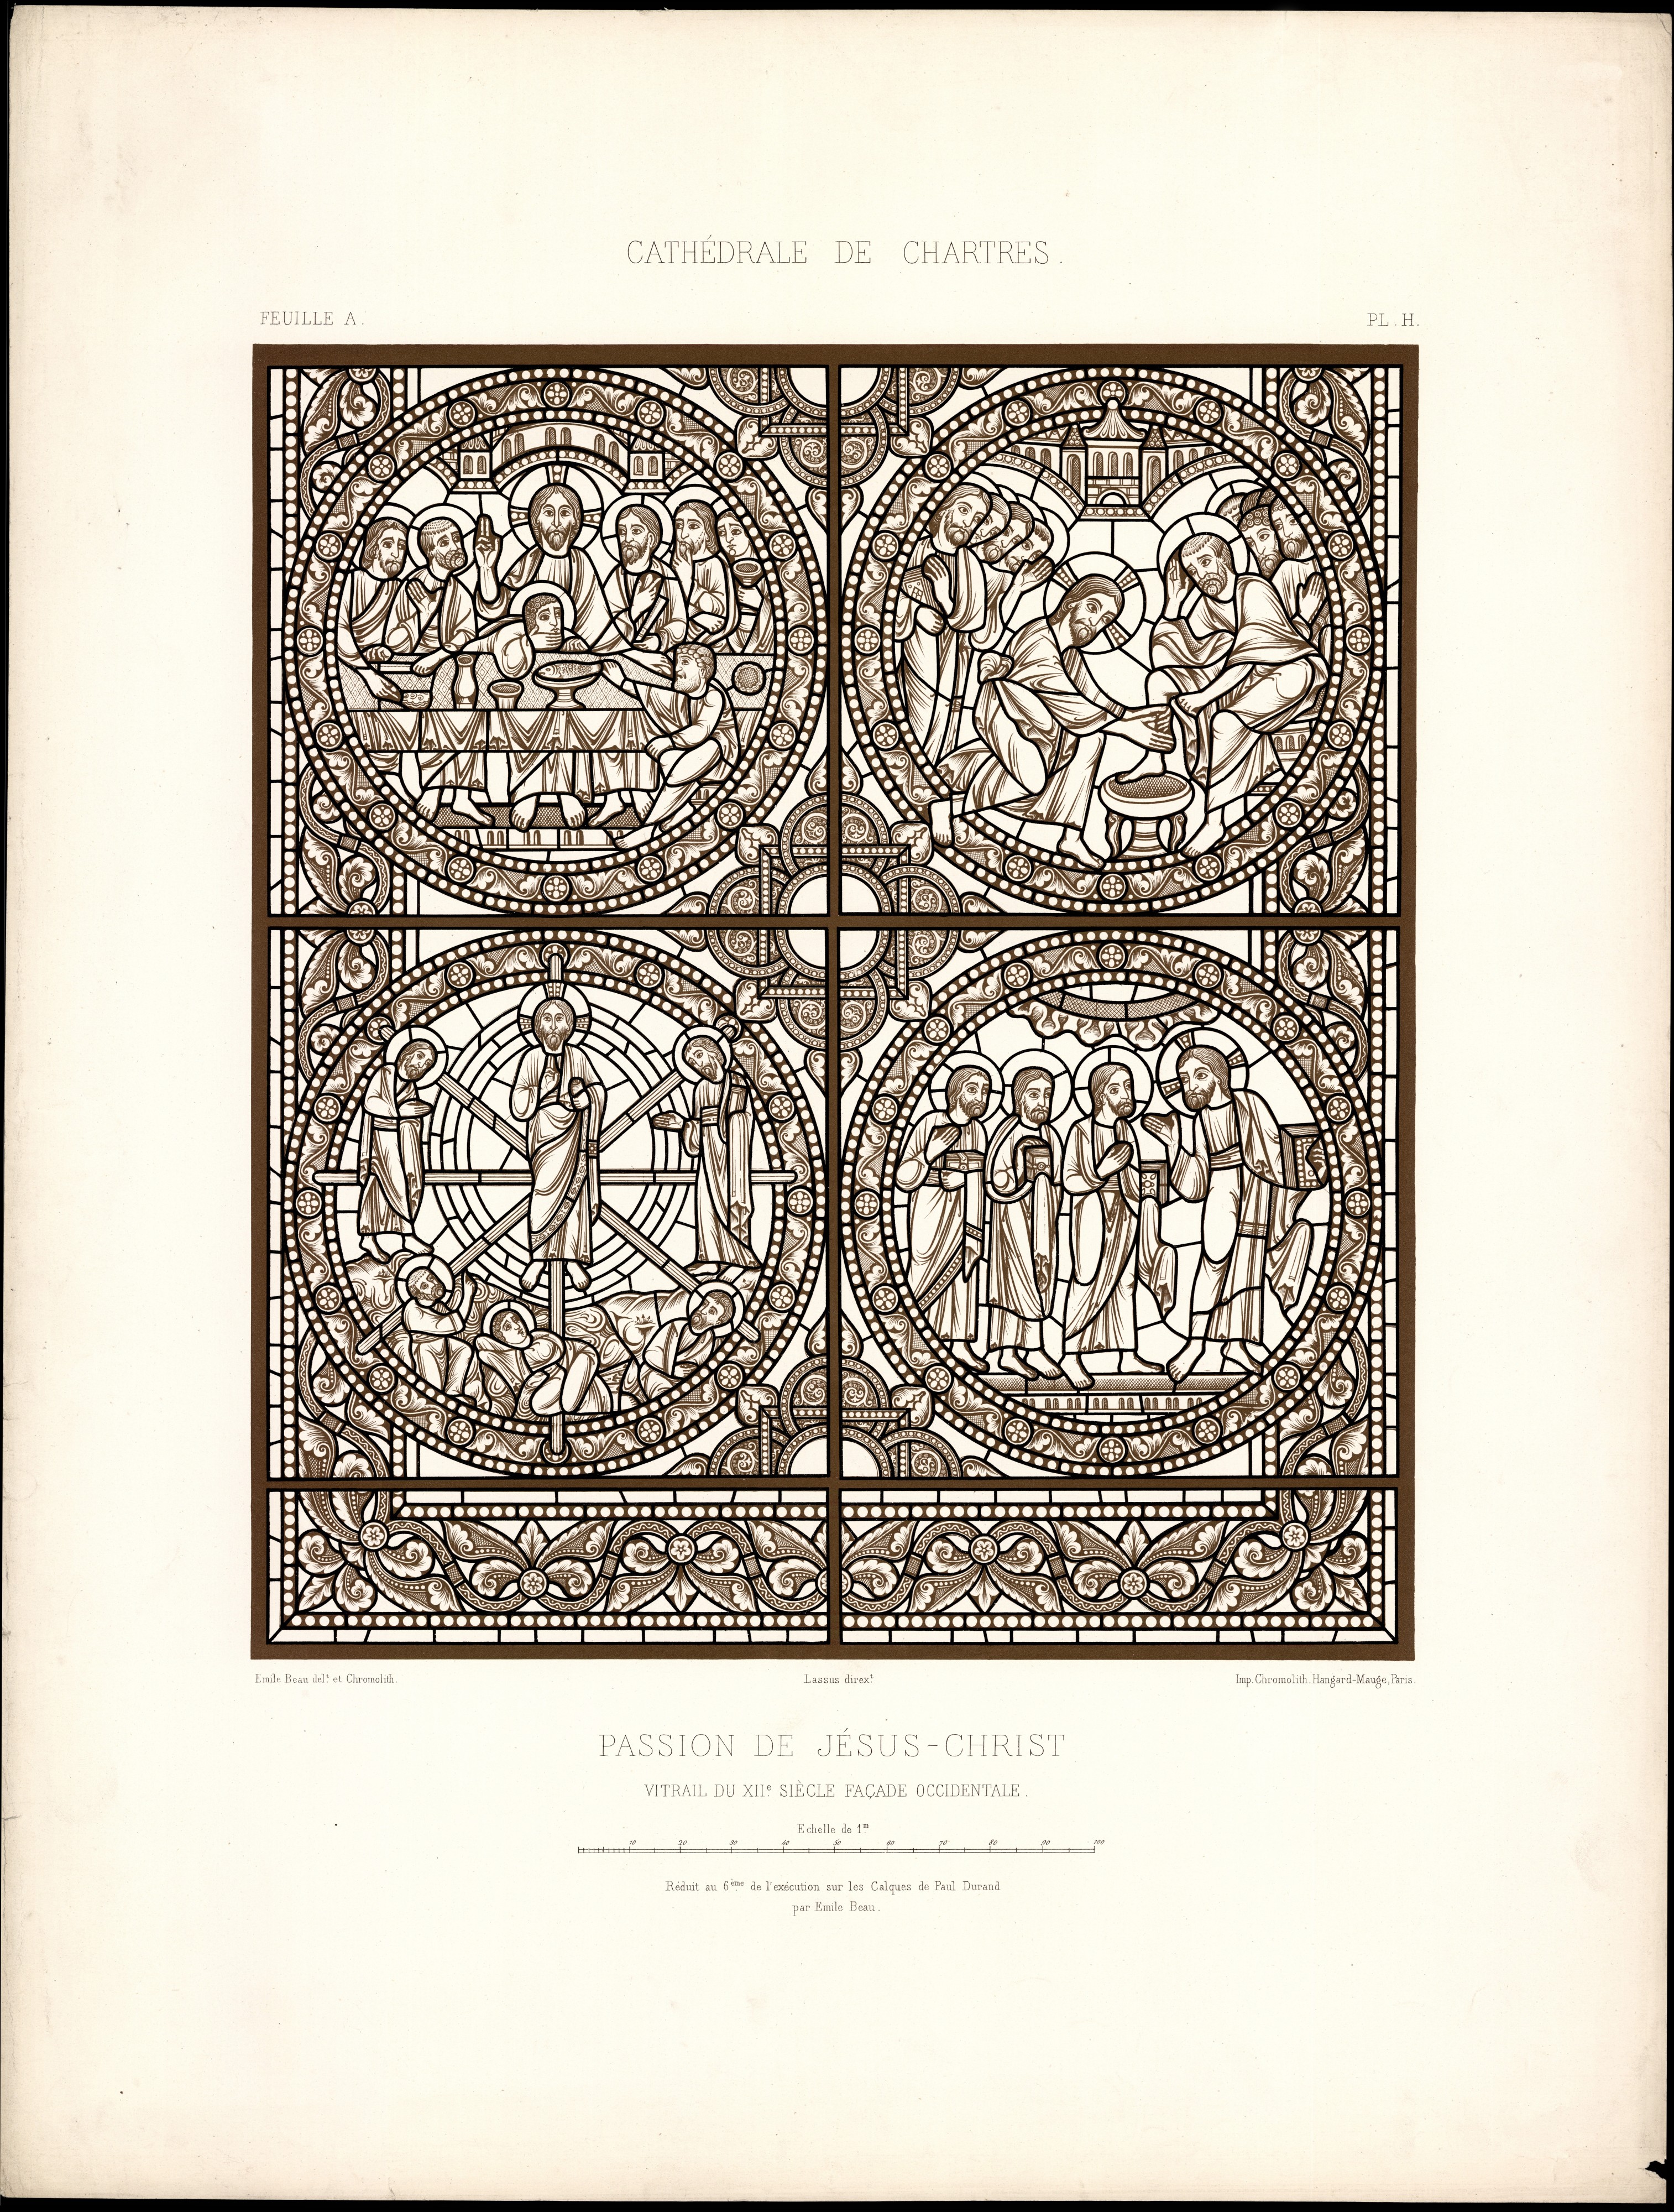 Monografie de la Cathedrale de Chartres - Atlas - Vitrail de la passion de Jesus Christ - Plan H - Feuille A